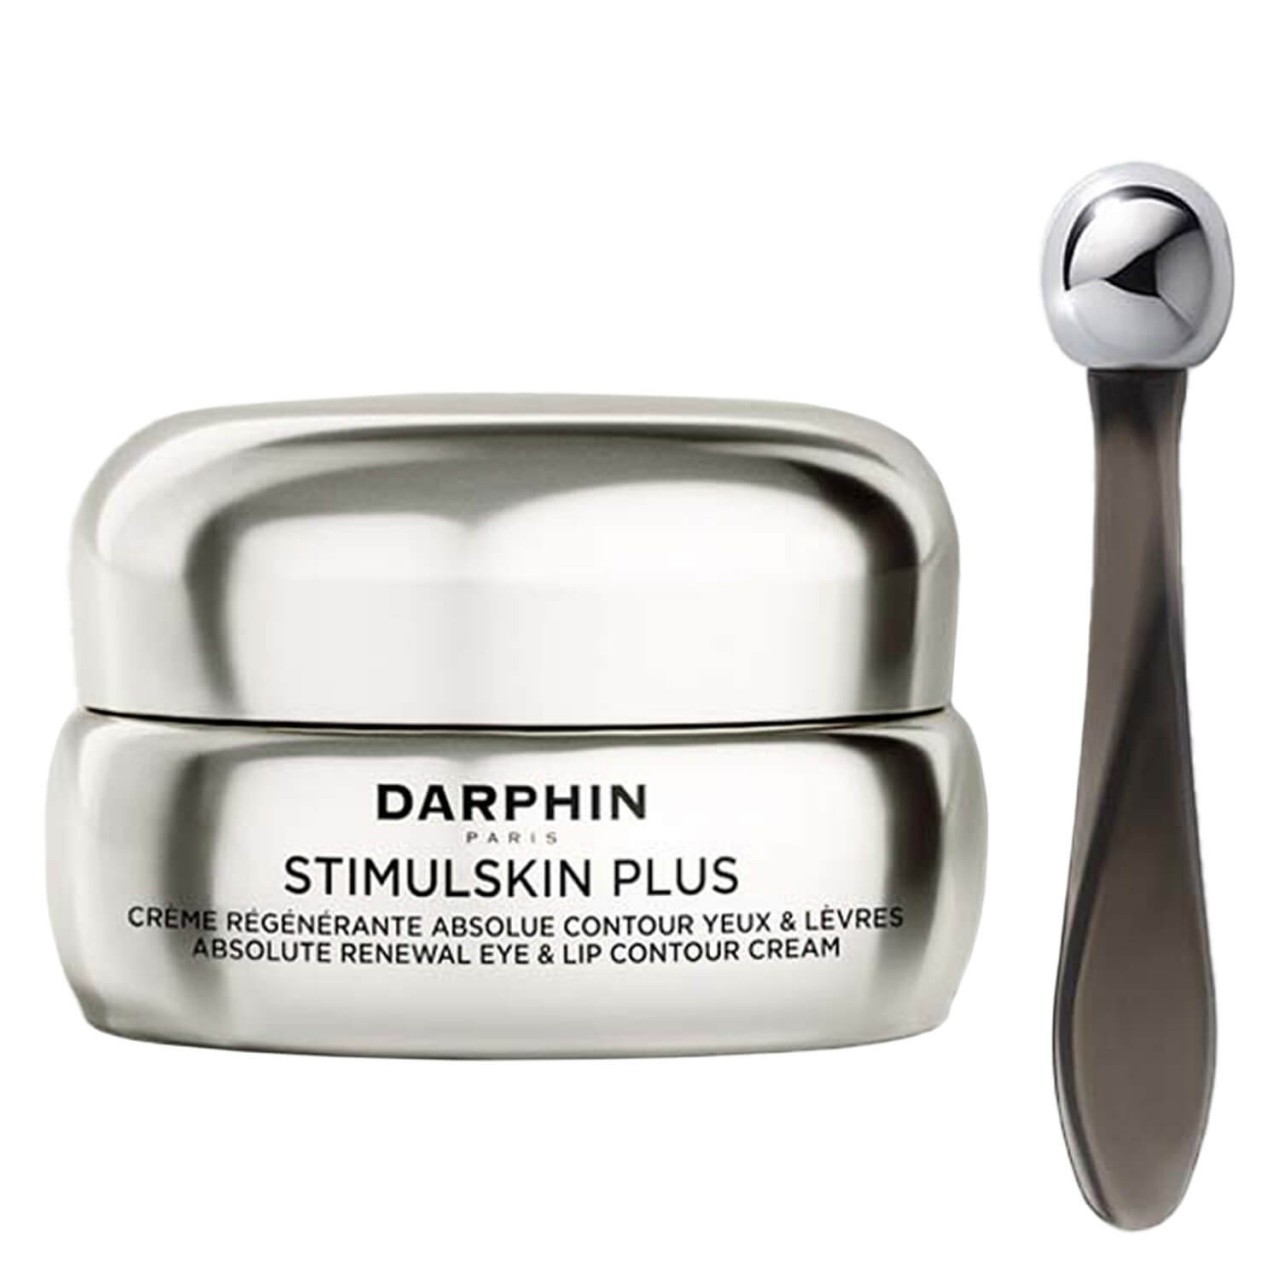 STIMULSKIN PLUS - Absolute Renewal Eye & Lip Contour Cream von Darphin